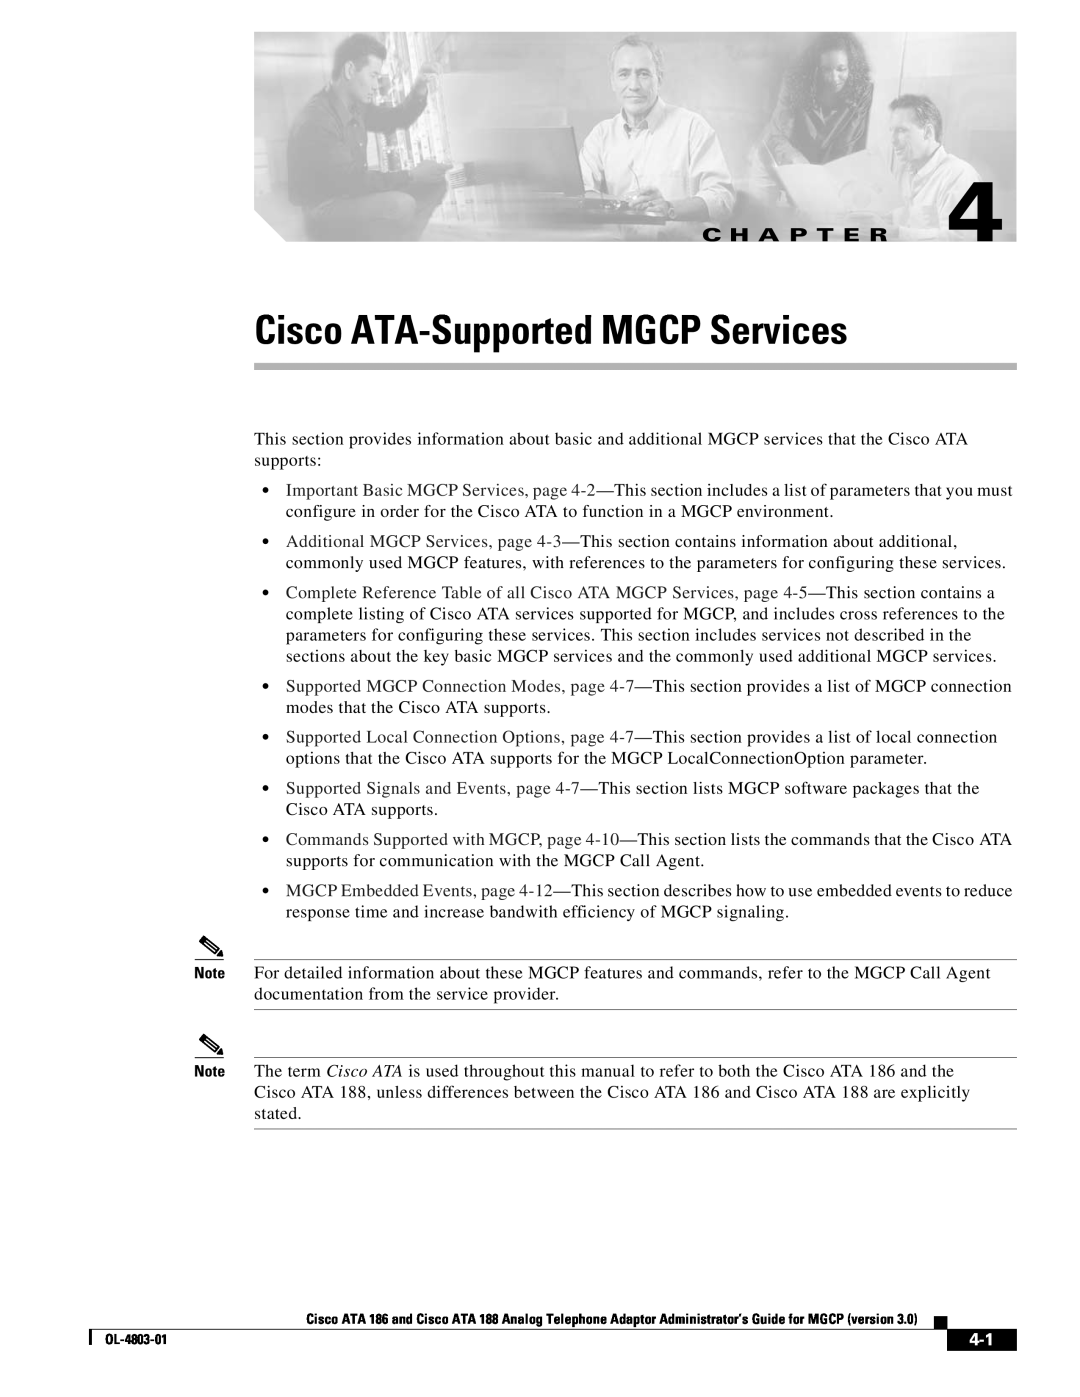 Cisco Systems ATA 186 manual Cisco ATA-Supported MGCP Services, C H A P T E R 